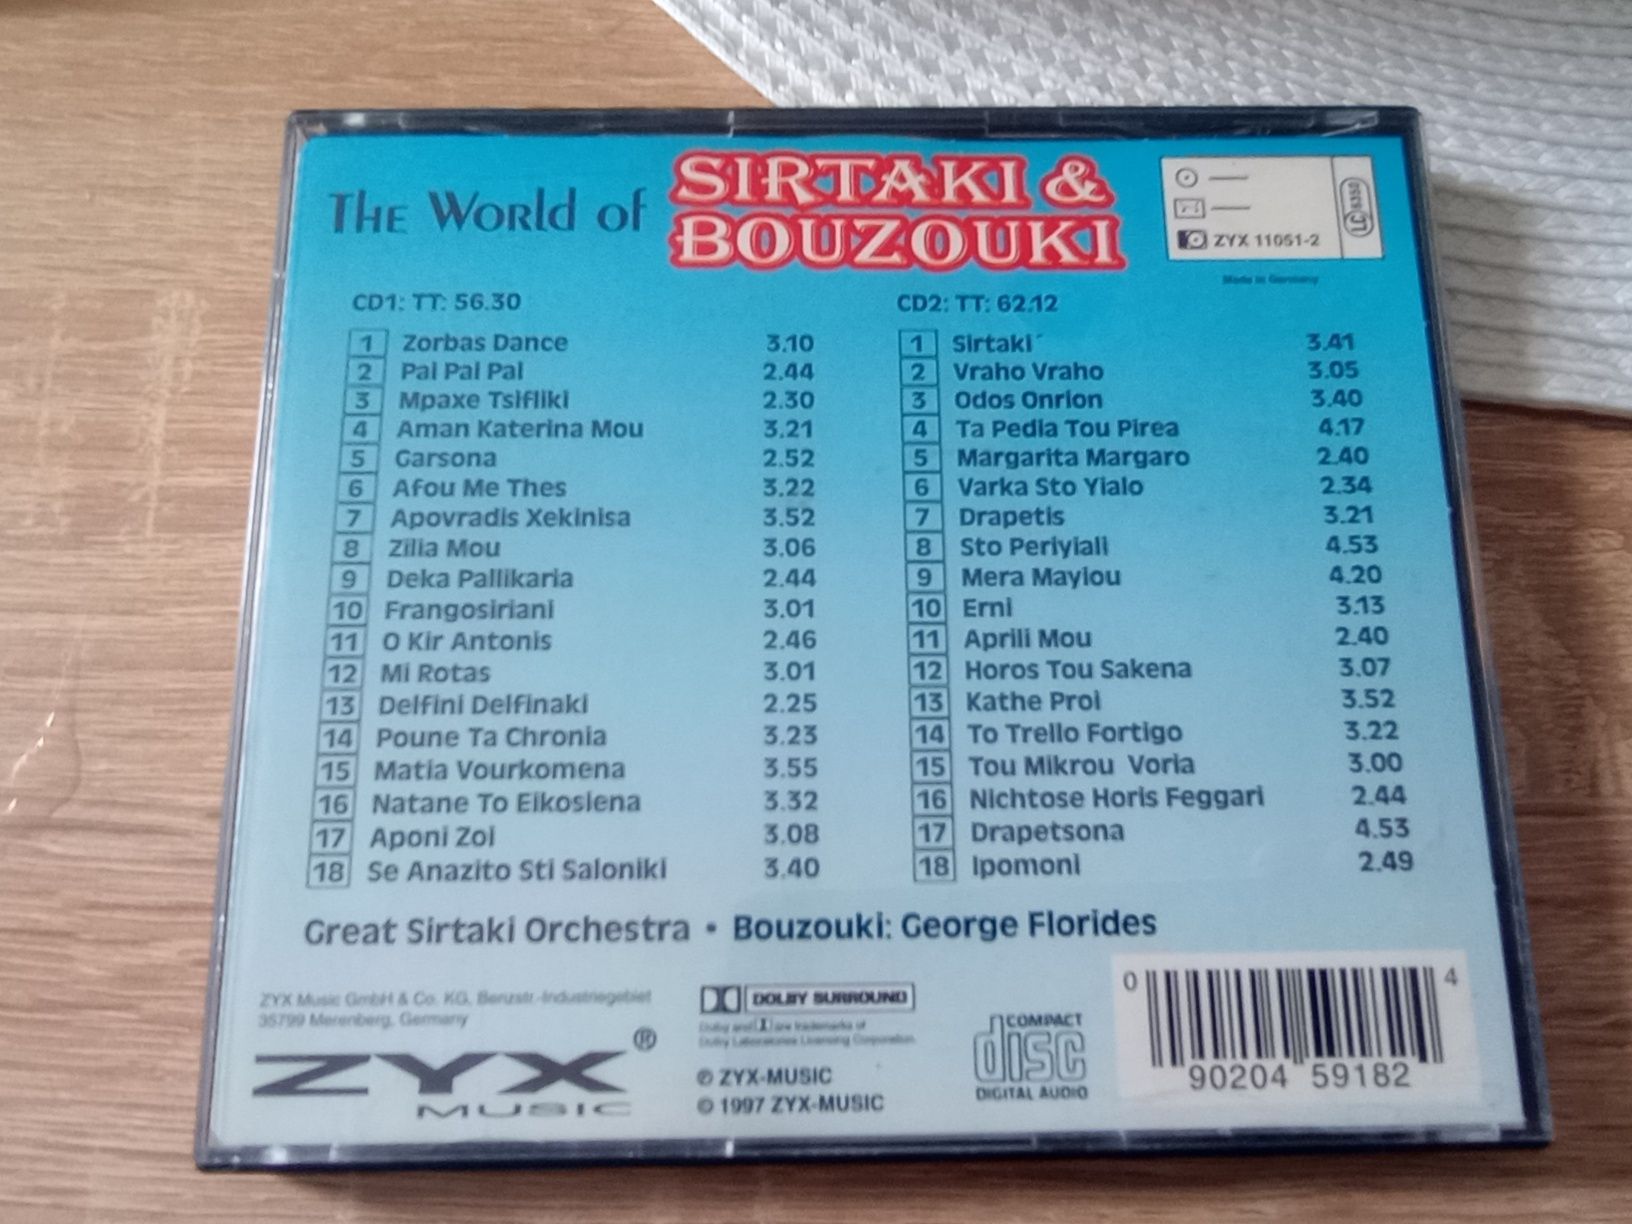 The world of Sirtaki & Bouzouki 2 CD